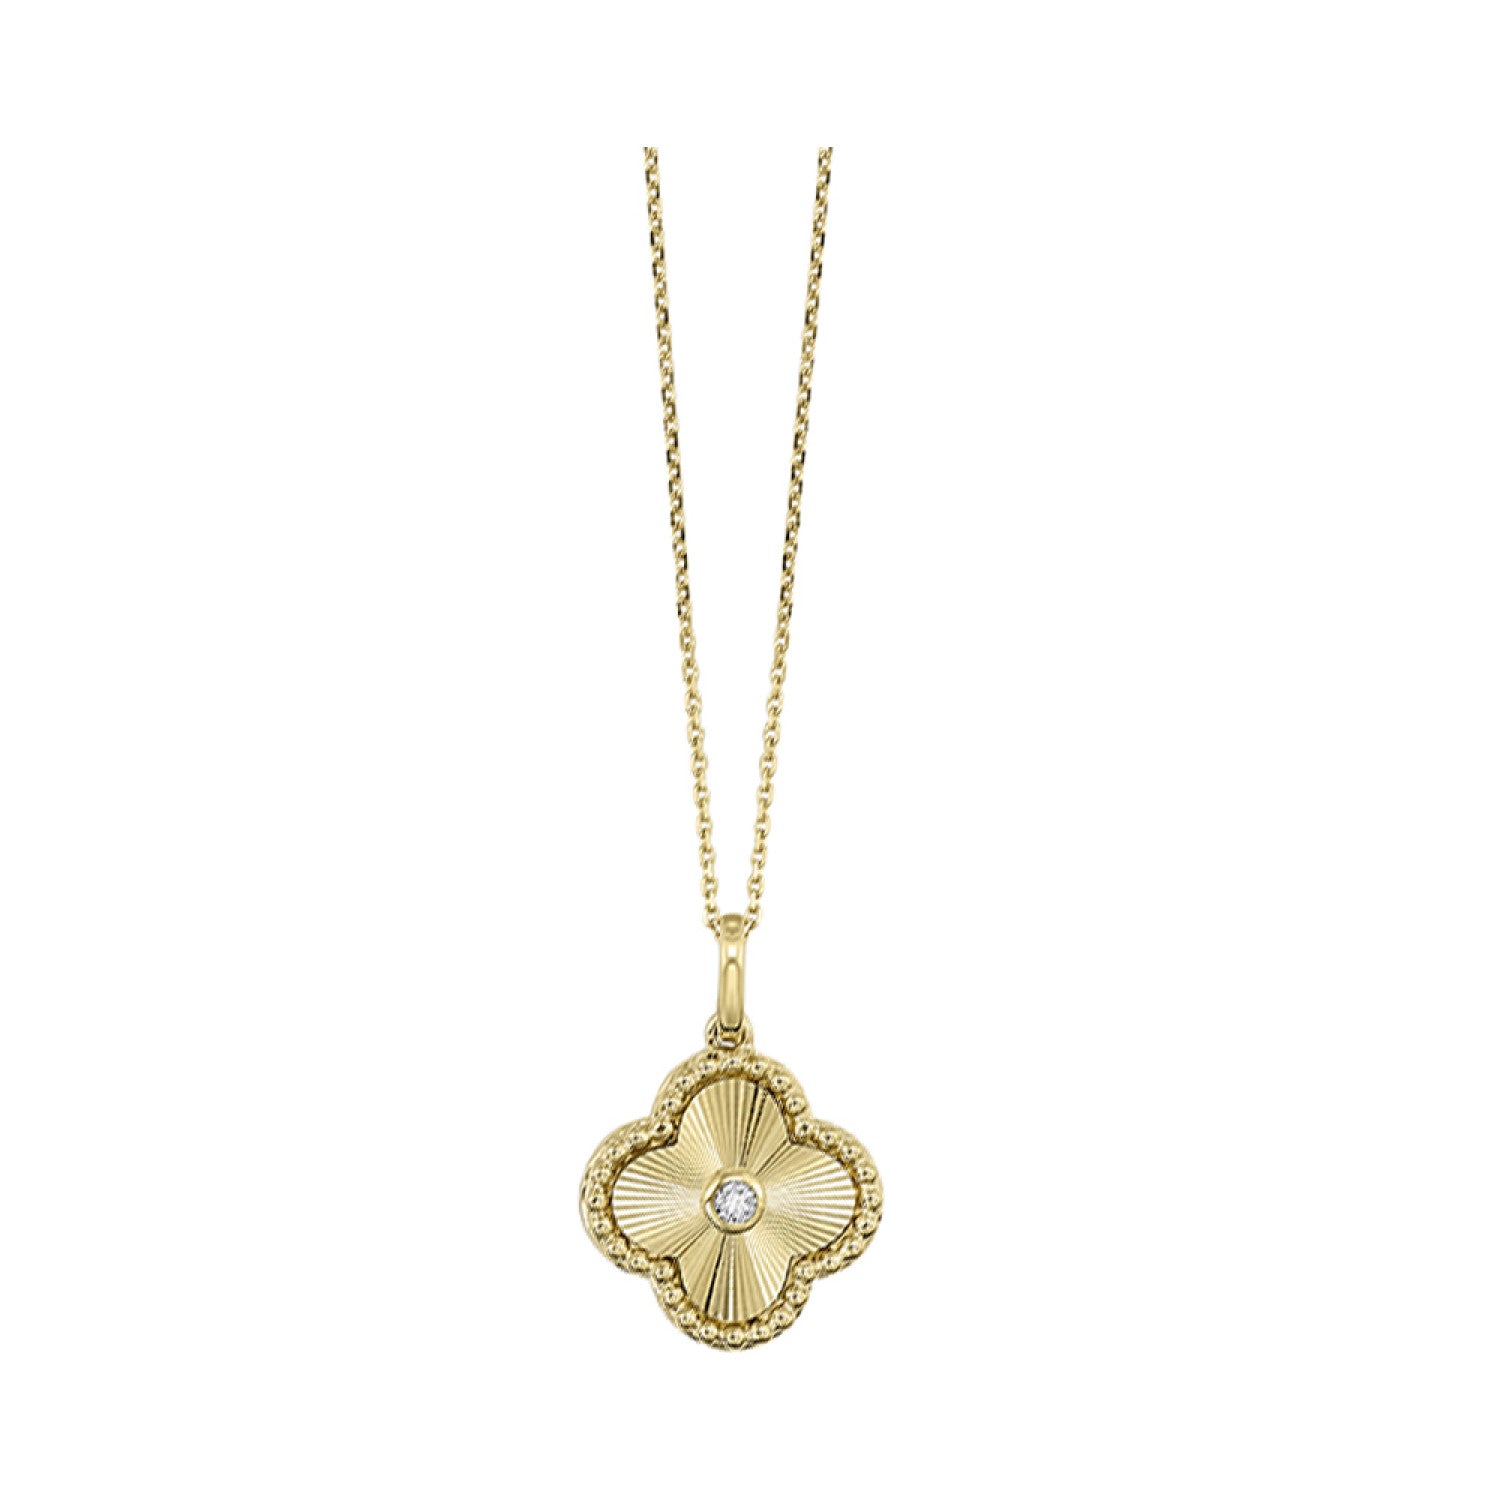 4 Leaf Clover Necklace – Sassy Spirit